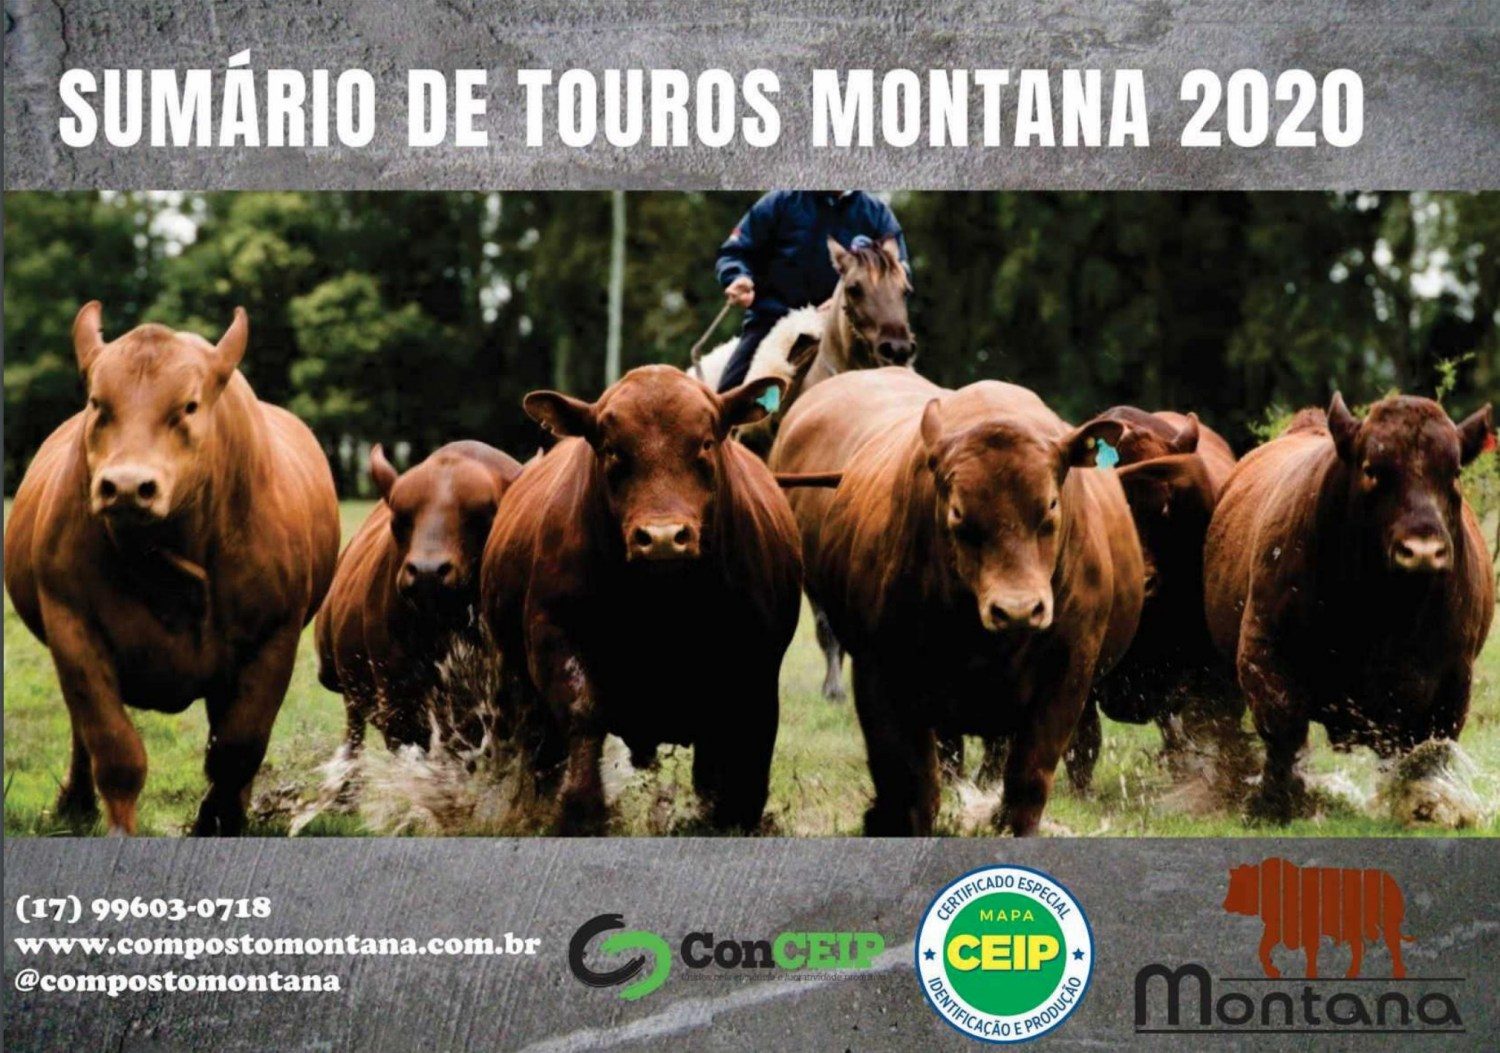 capa do sumario de touros montana 2020